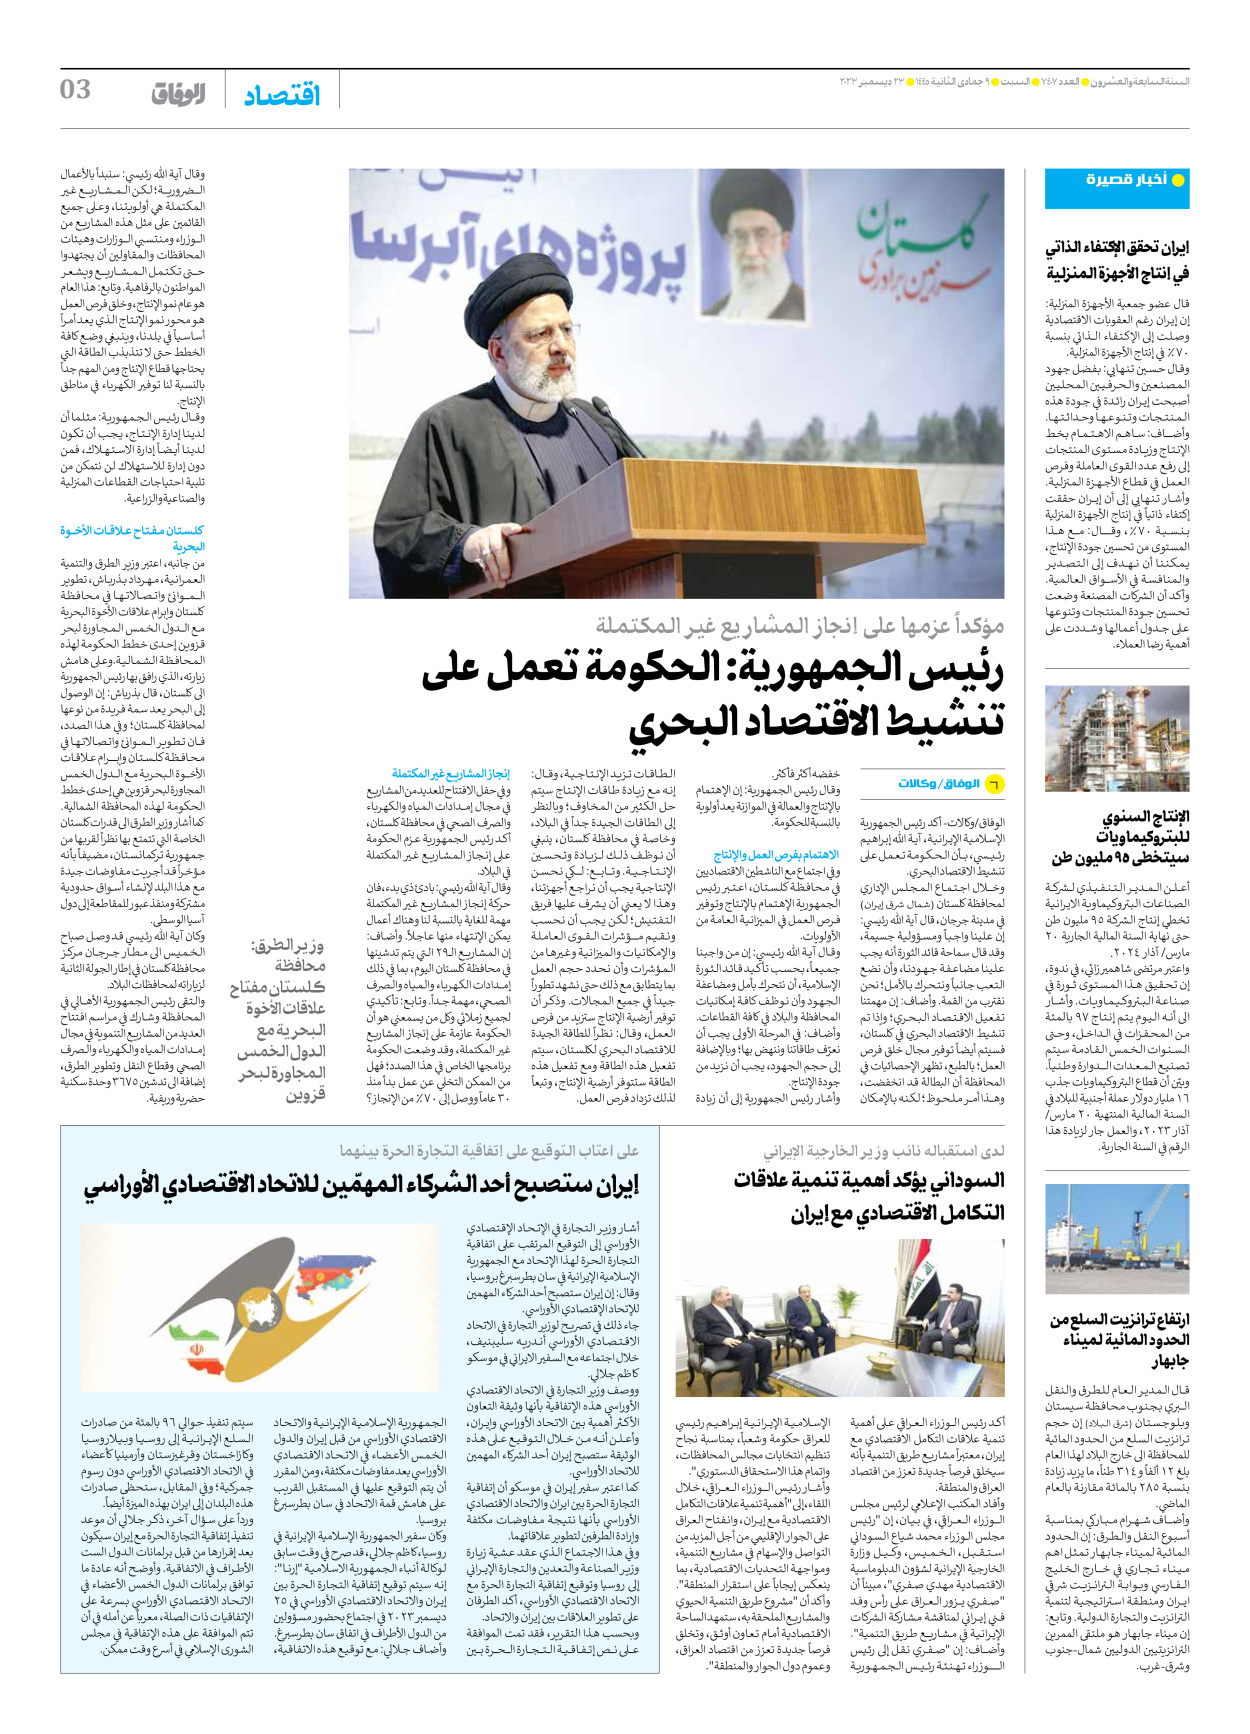 صحیفة ایران الدولیة الوفاق - العدد سبعة آلاف وأربعمائة وسبعة - ٢٣ ديسمبر ٢٠٢٣ - الصفحة ۳